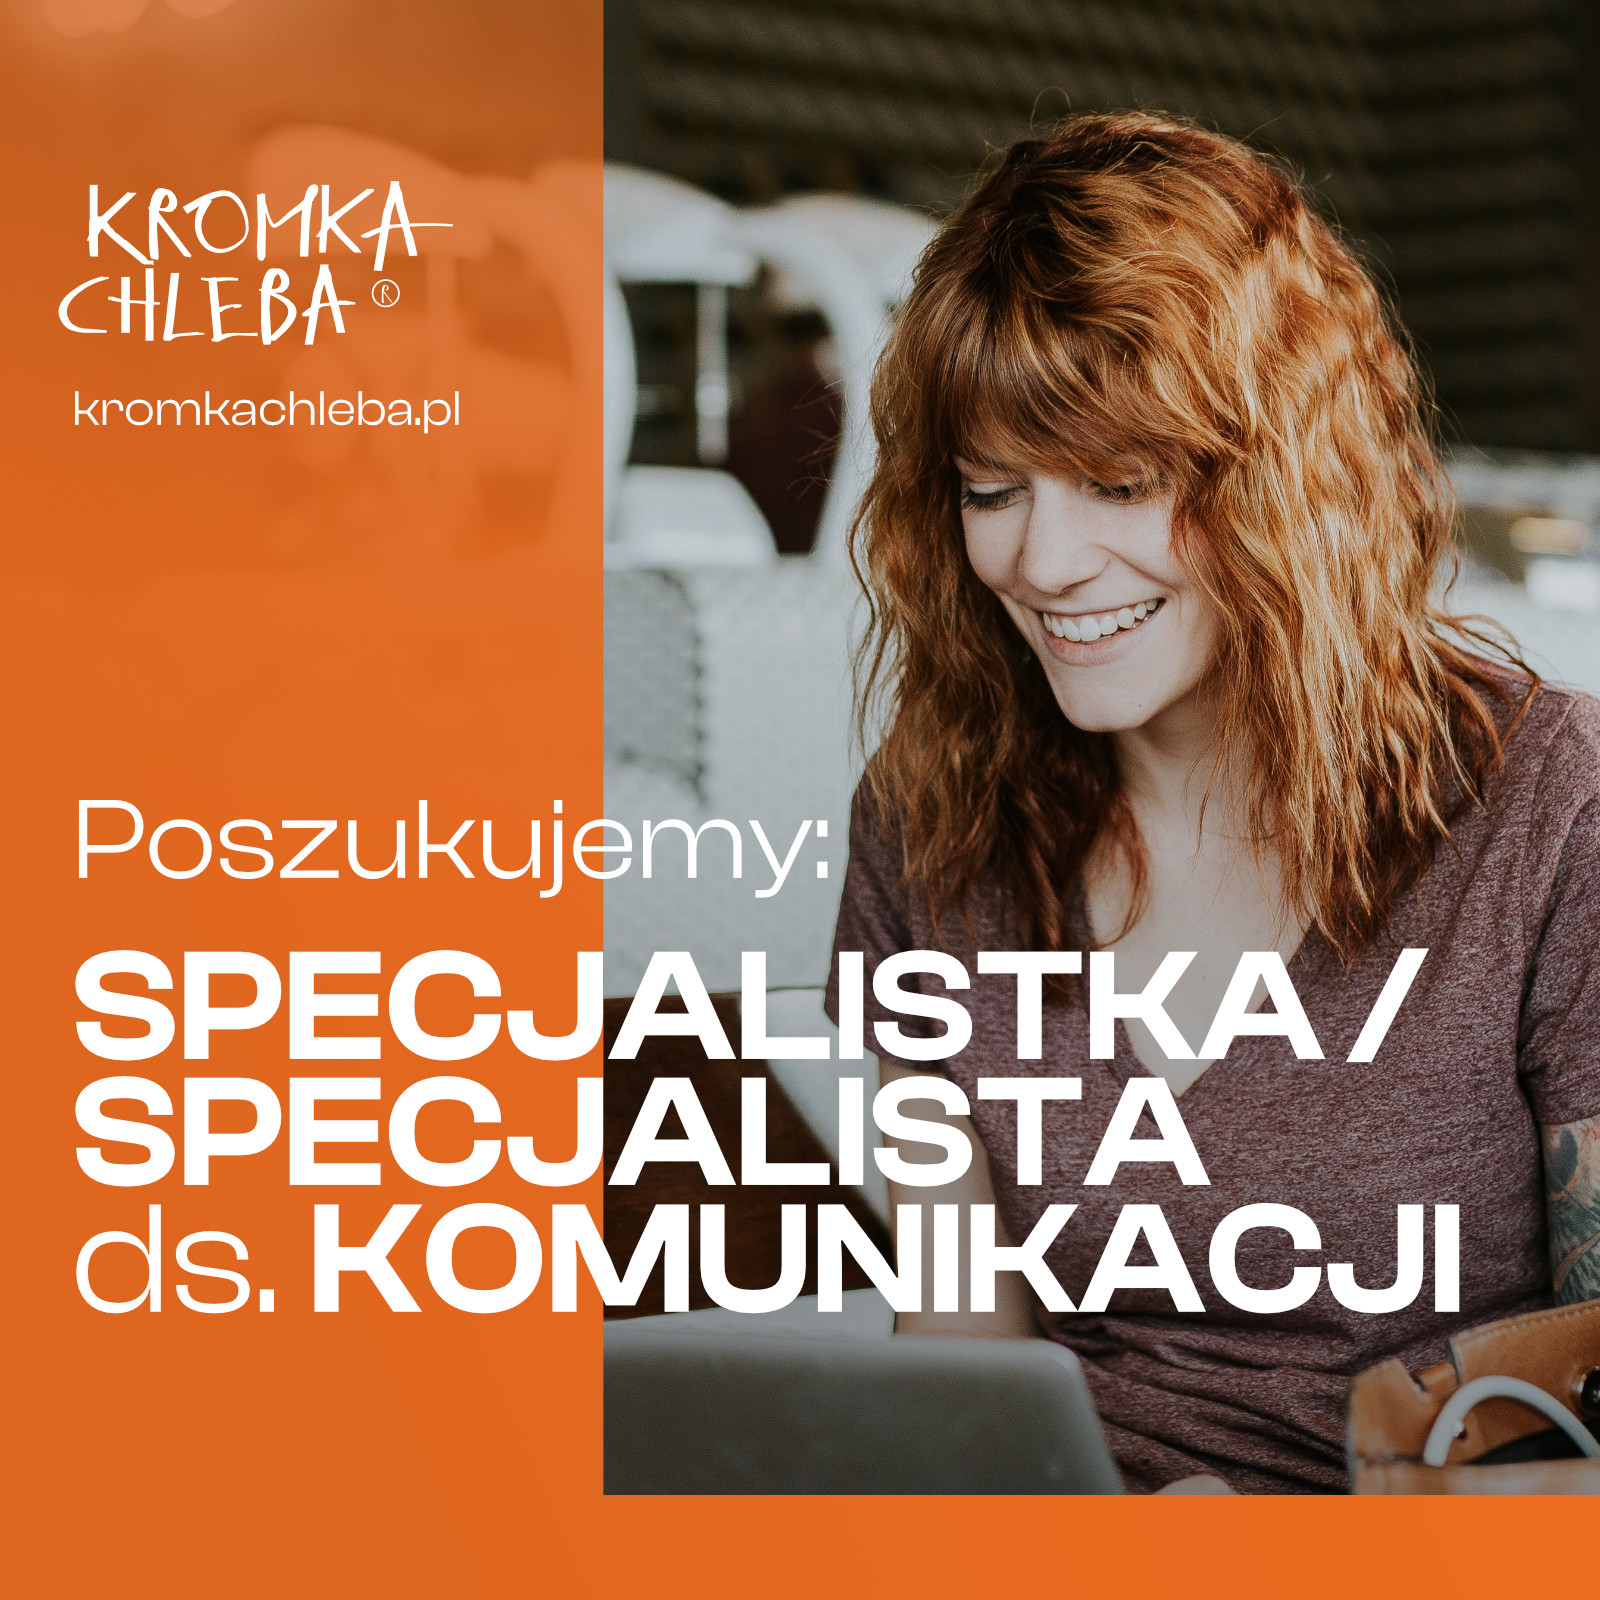 kromkachleba.pl